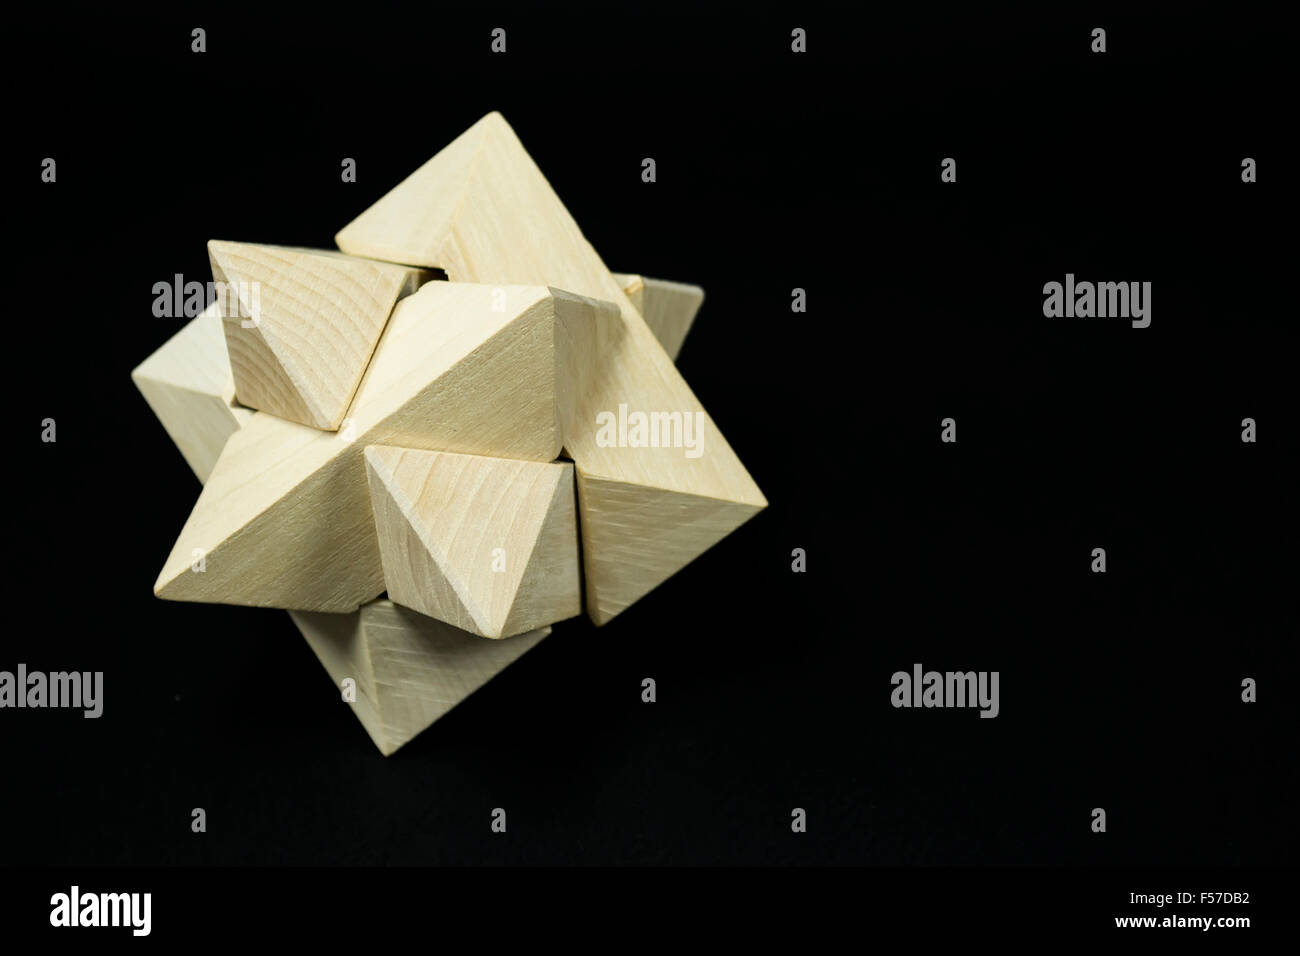 Puzzle en bois taillées dans du minéral combinées pour former un complexe star comme forme tridimensionnelle, sur fond noir Banque D'Images